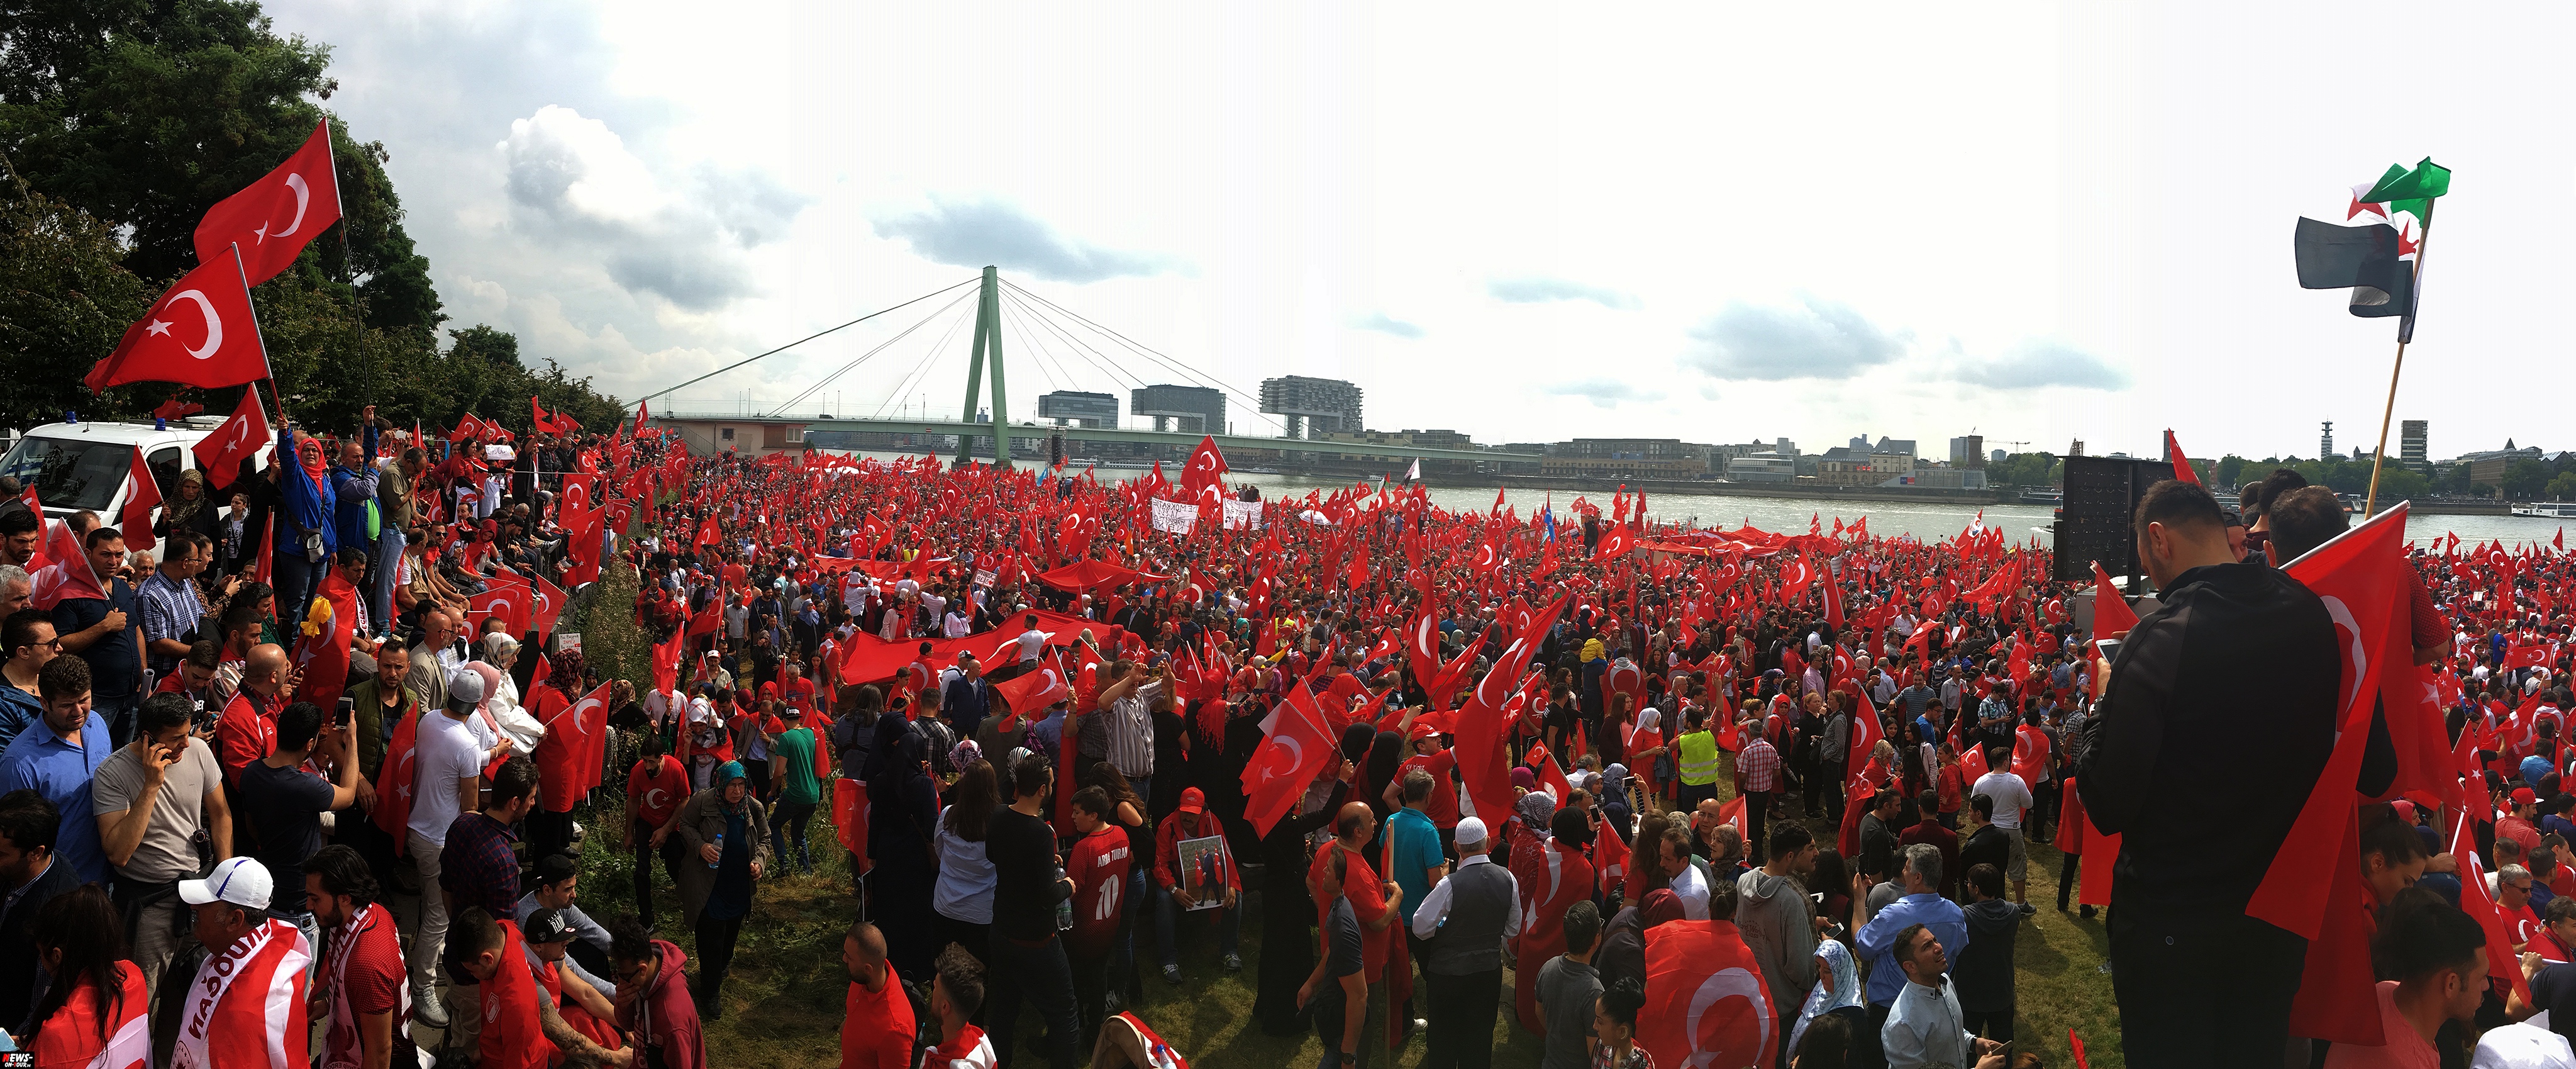 Bildergebnis für demo koeln 2016 erdogan